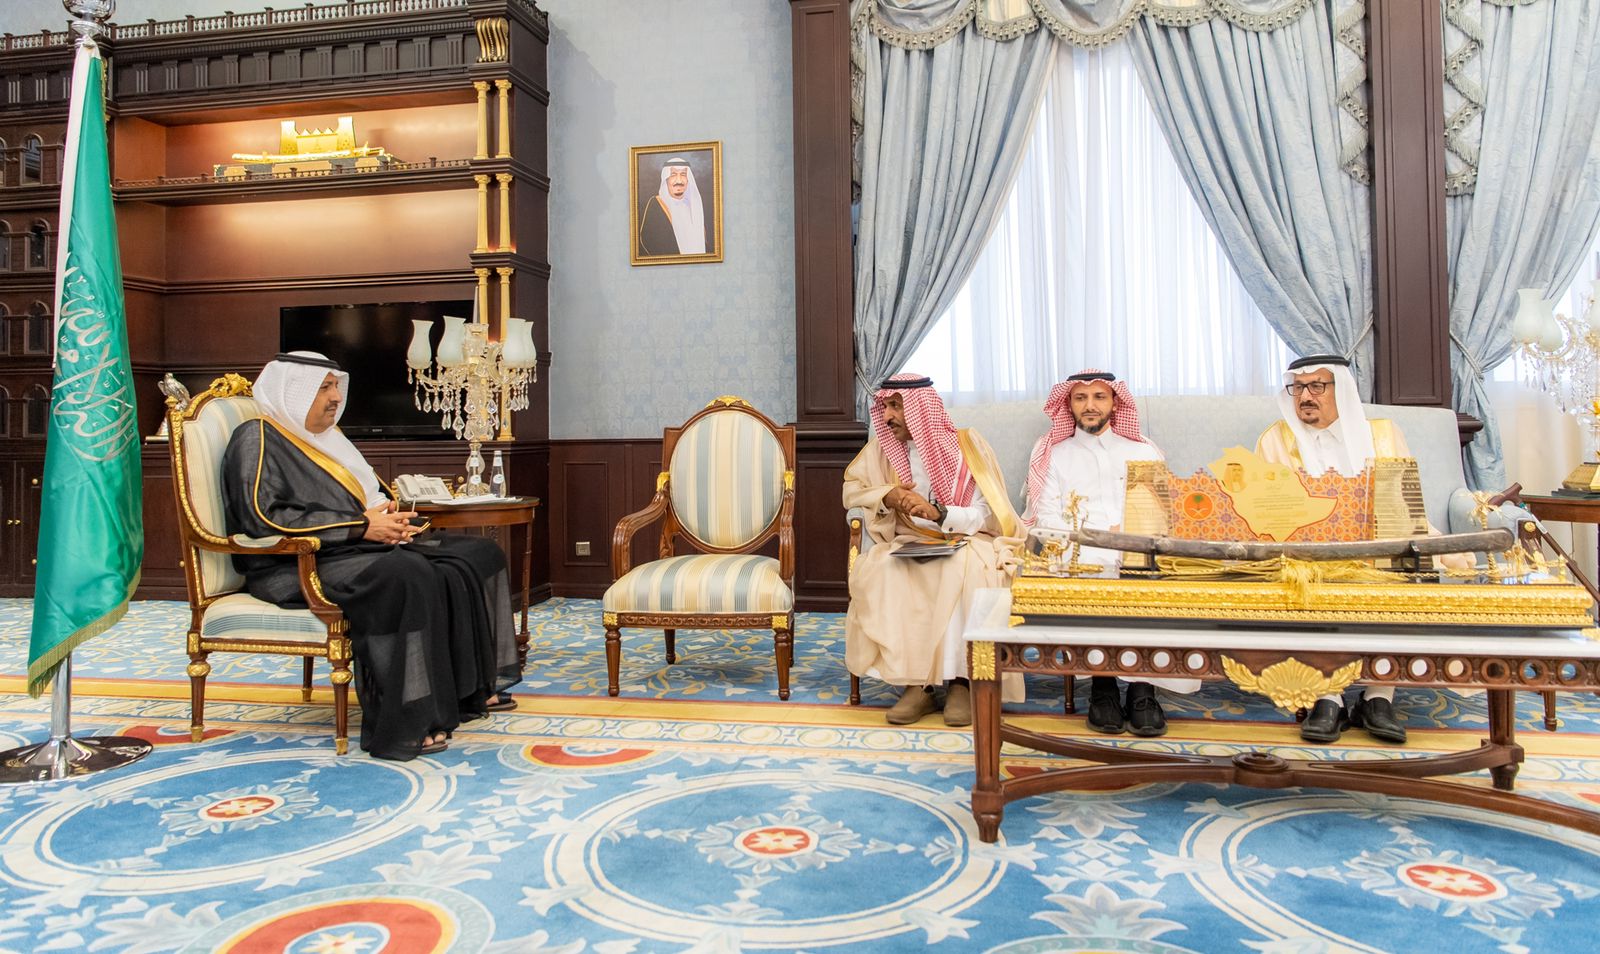 الأمير حسام يستقبل مدير عام الموارد البشرية والتنمية الاجتماعية بالباحة